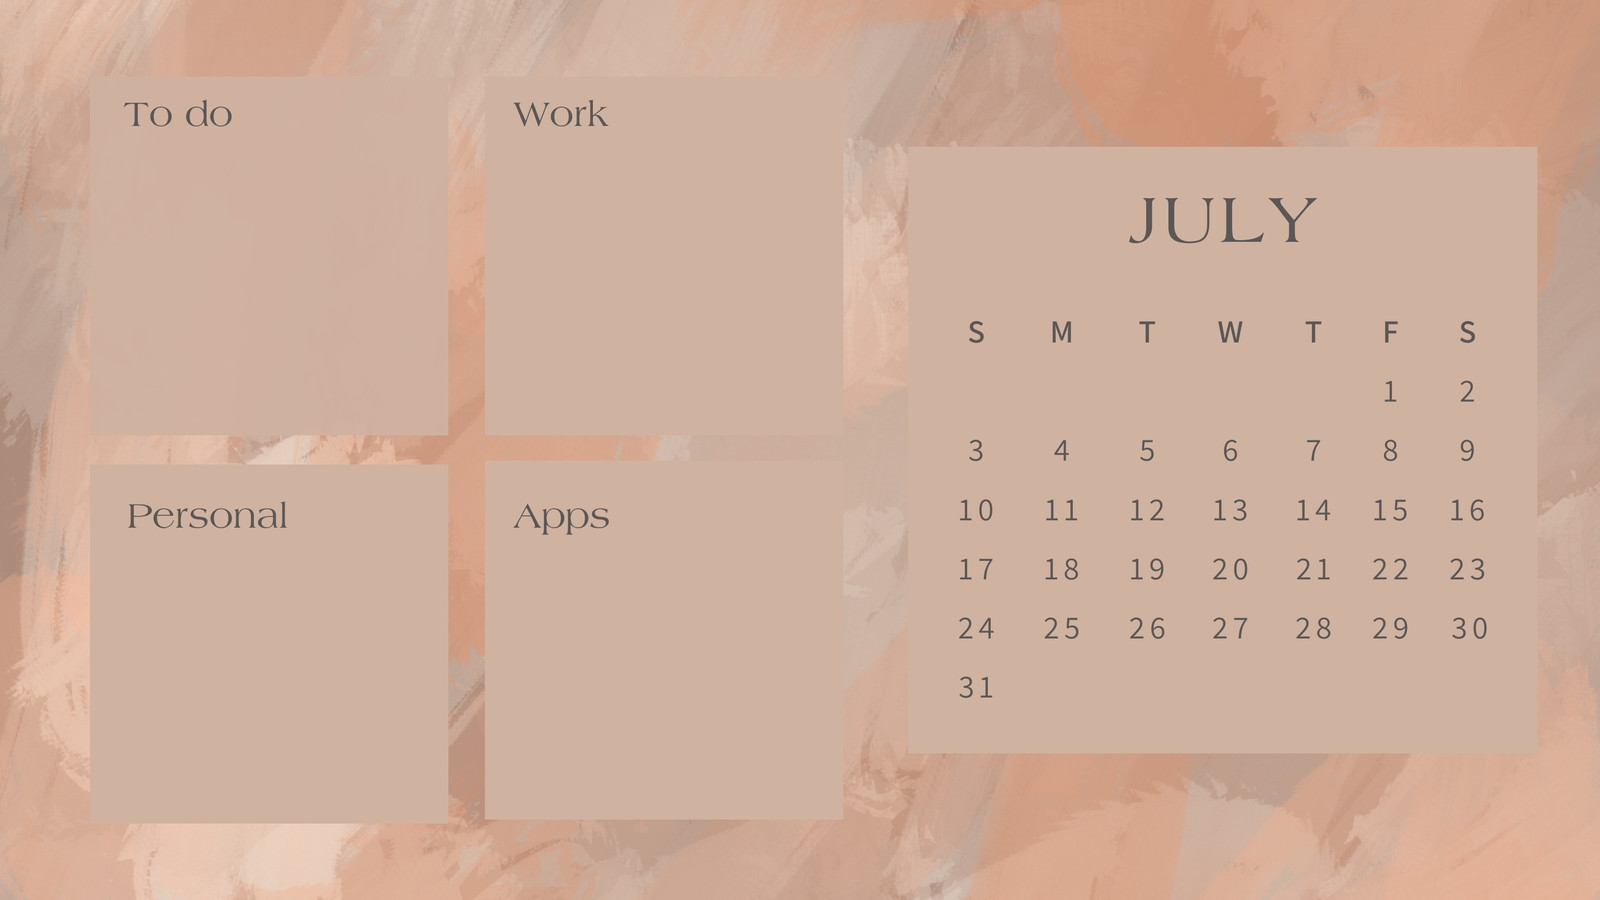 July 2022 Calendar Wallpapers HD Free download  PixelsTalkNet